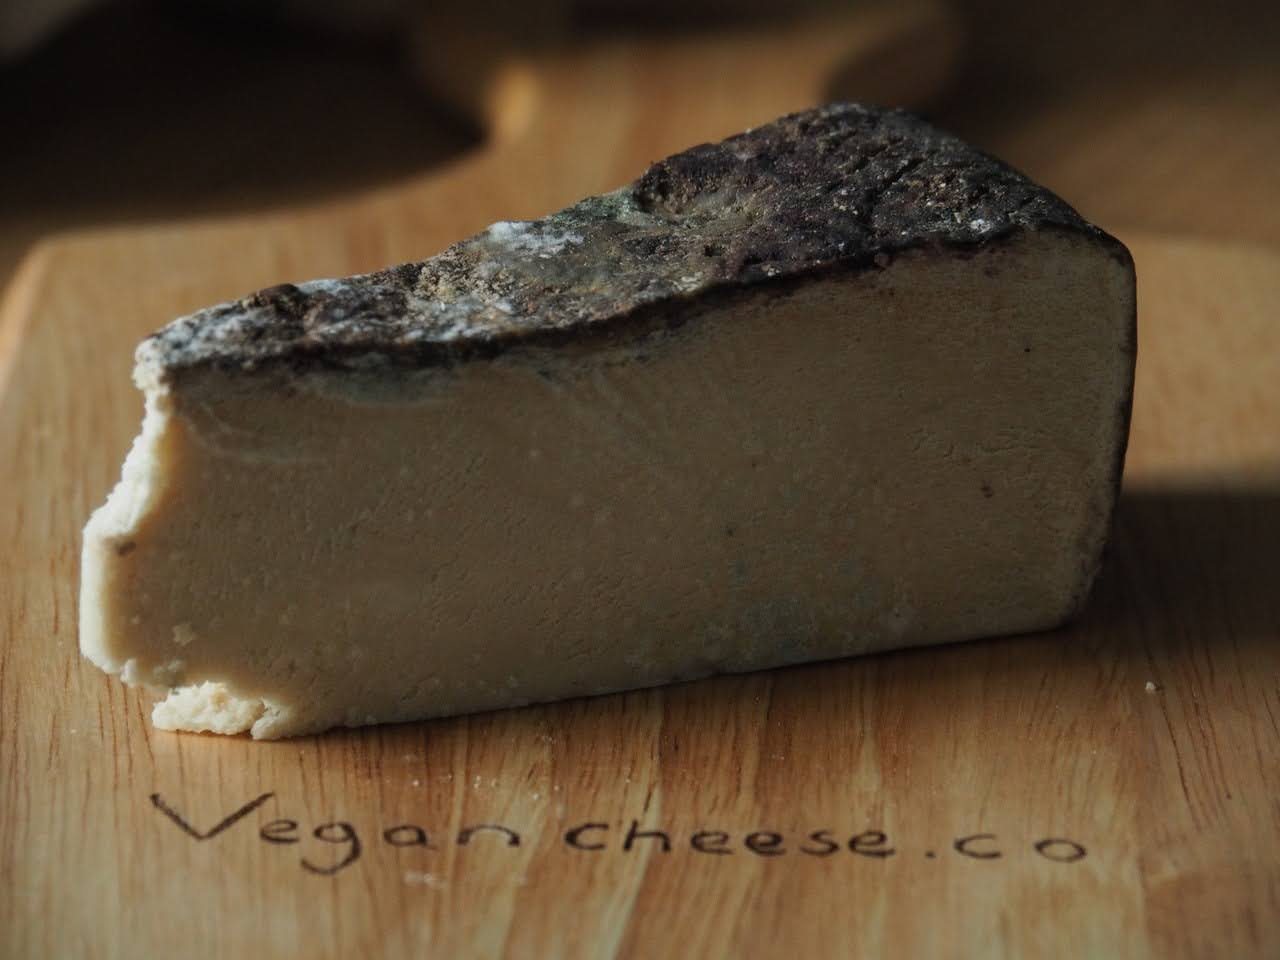 Food by Sumear Verdure Long Aged Vegan Cheese